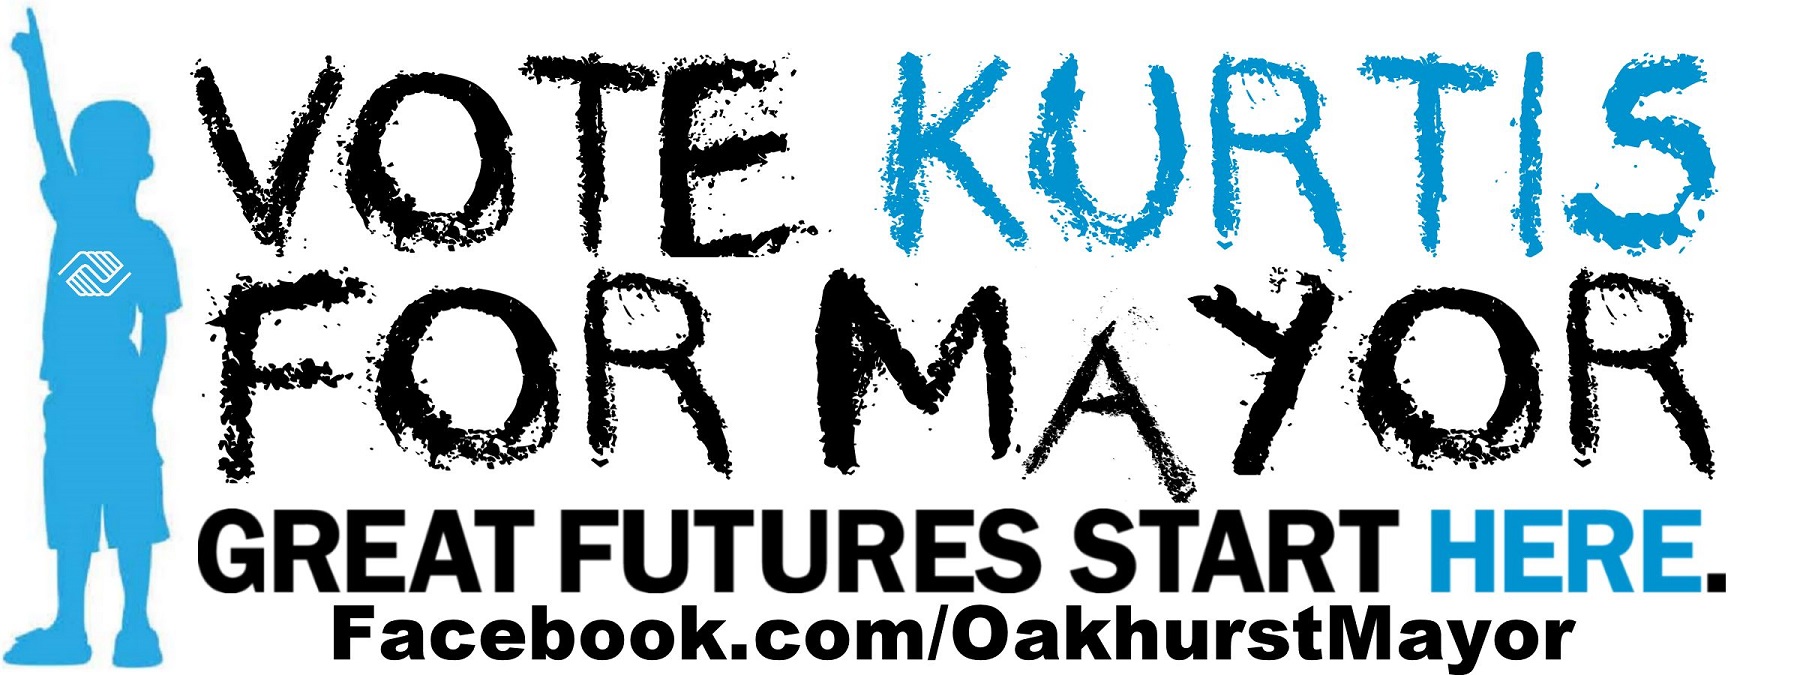 2013 Kurtis BGC Mayor Logo - Great Futures